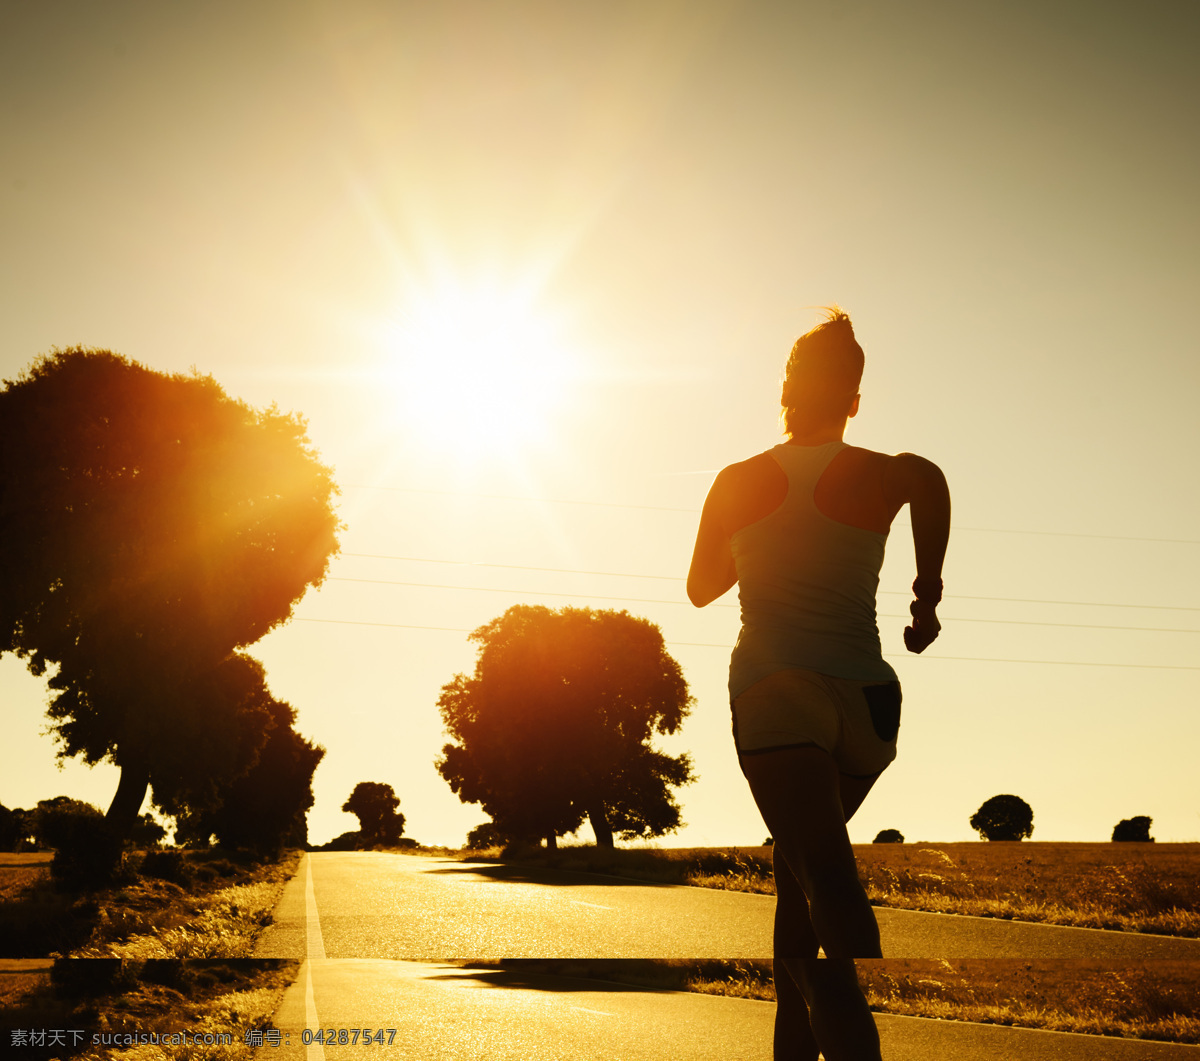 跑步 人物 人物摄影 阳光 运动 体育运动 其他类别 生活百科